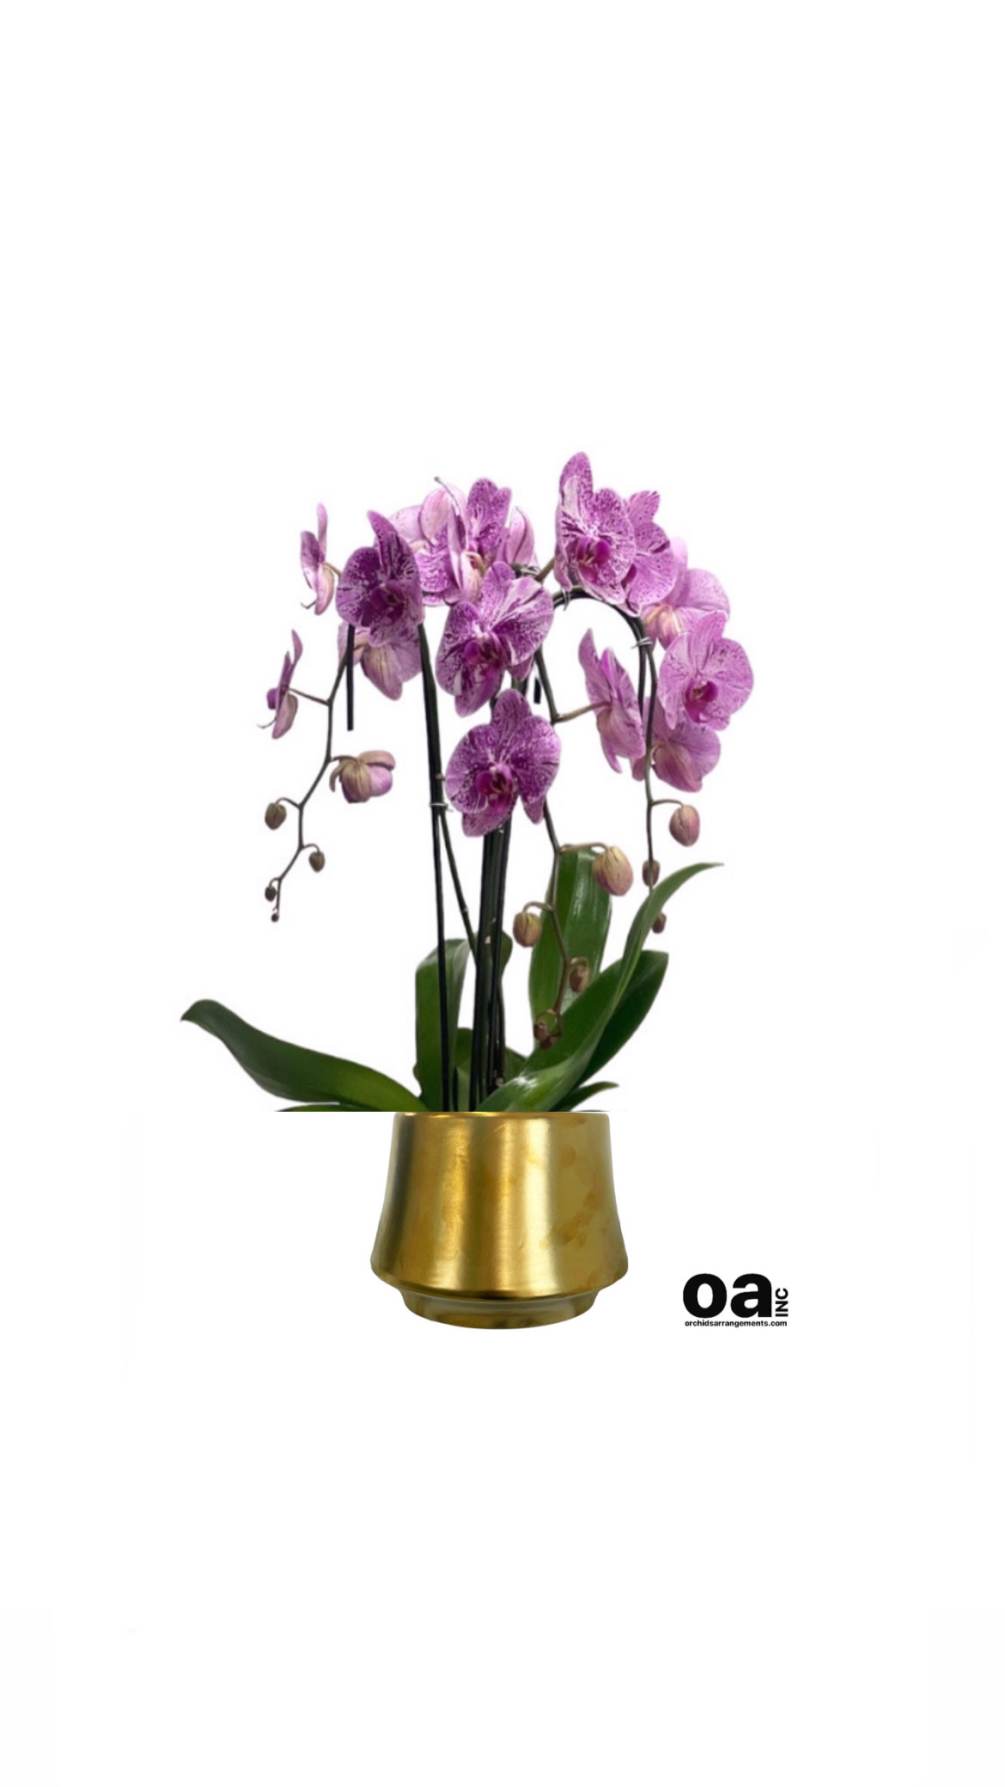 Hallandale Beach arrangements floral
3 pink orchids flowers 6&quot; D x 6.5&quot; T